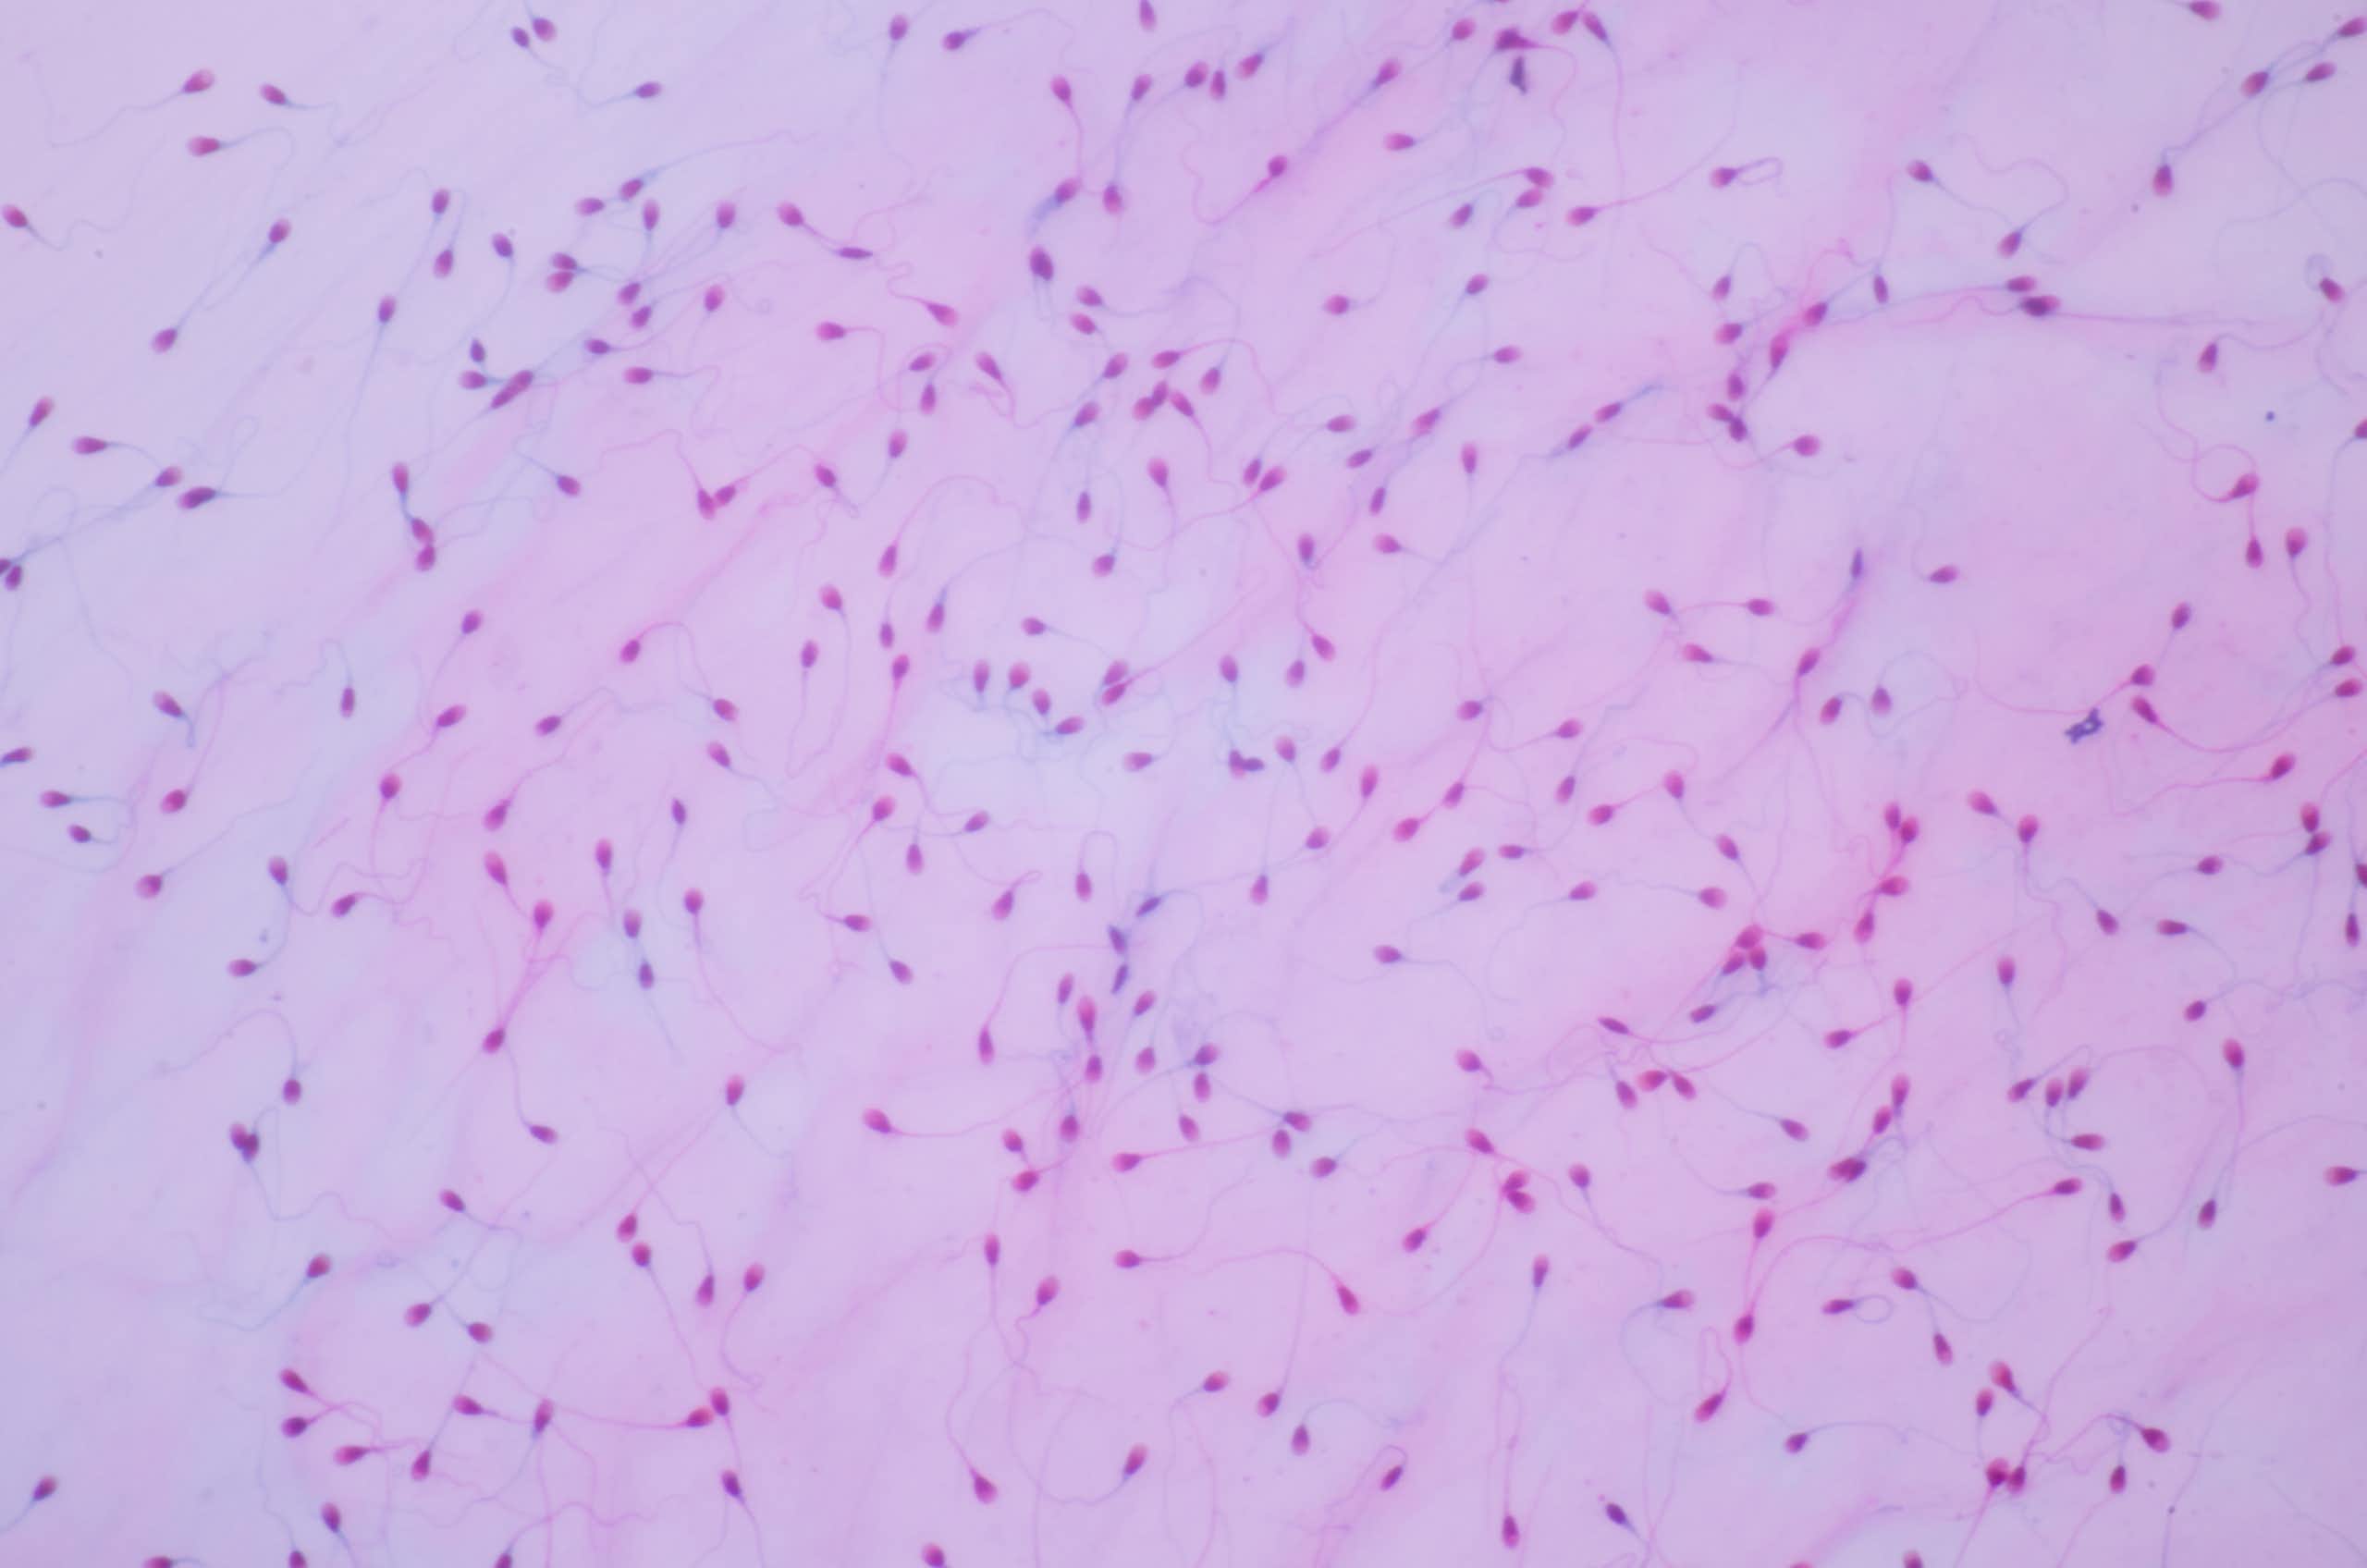 La microbiota también podría desempeñar un papel en la fertilidad del hombre